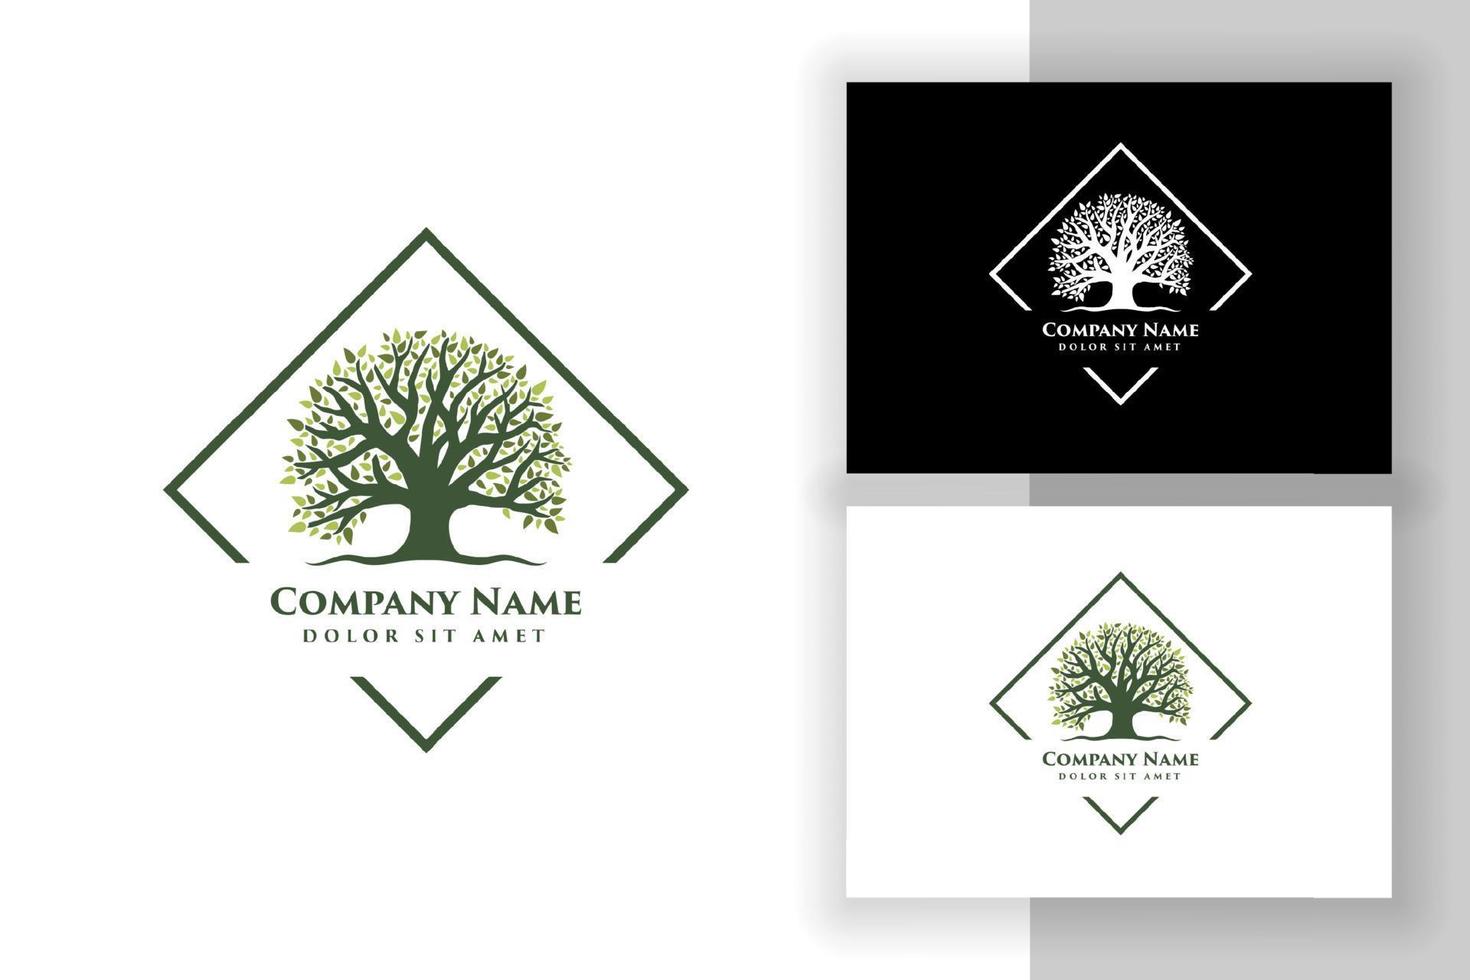 modello di progettazione di logo di illustrazione vettoriale di albero di quercia. disegni astratti del logo dell'albero vibrante